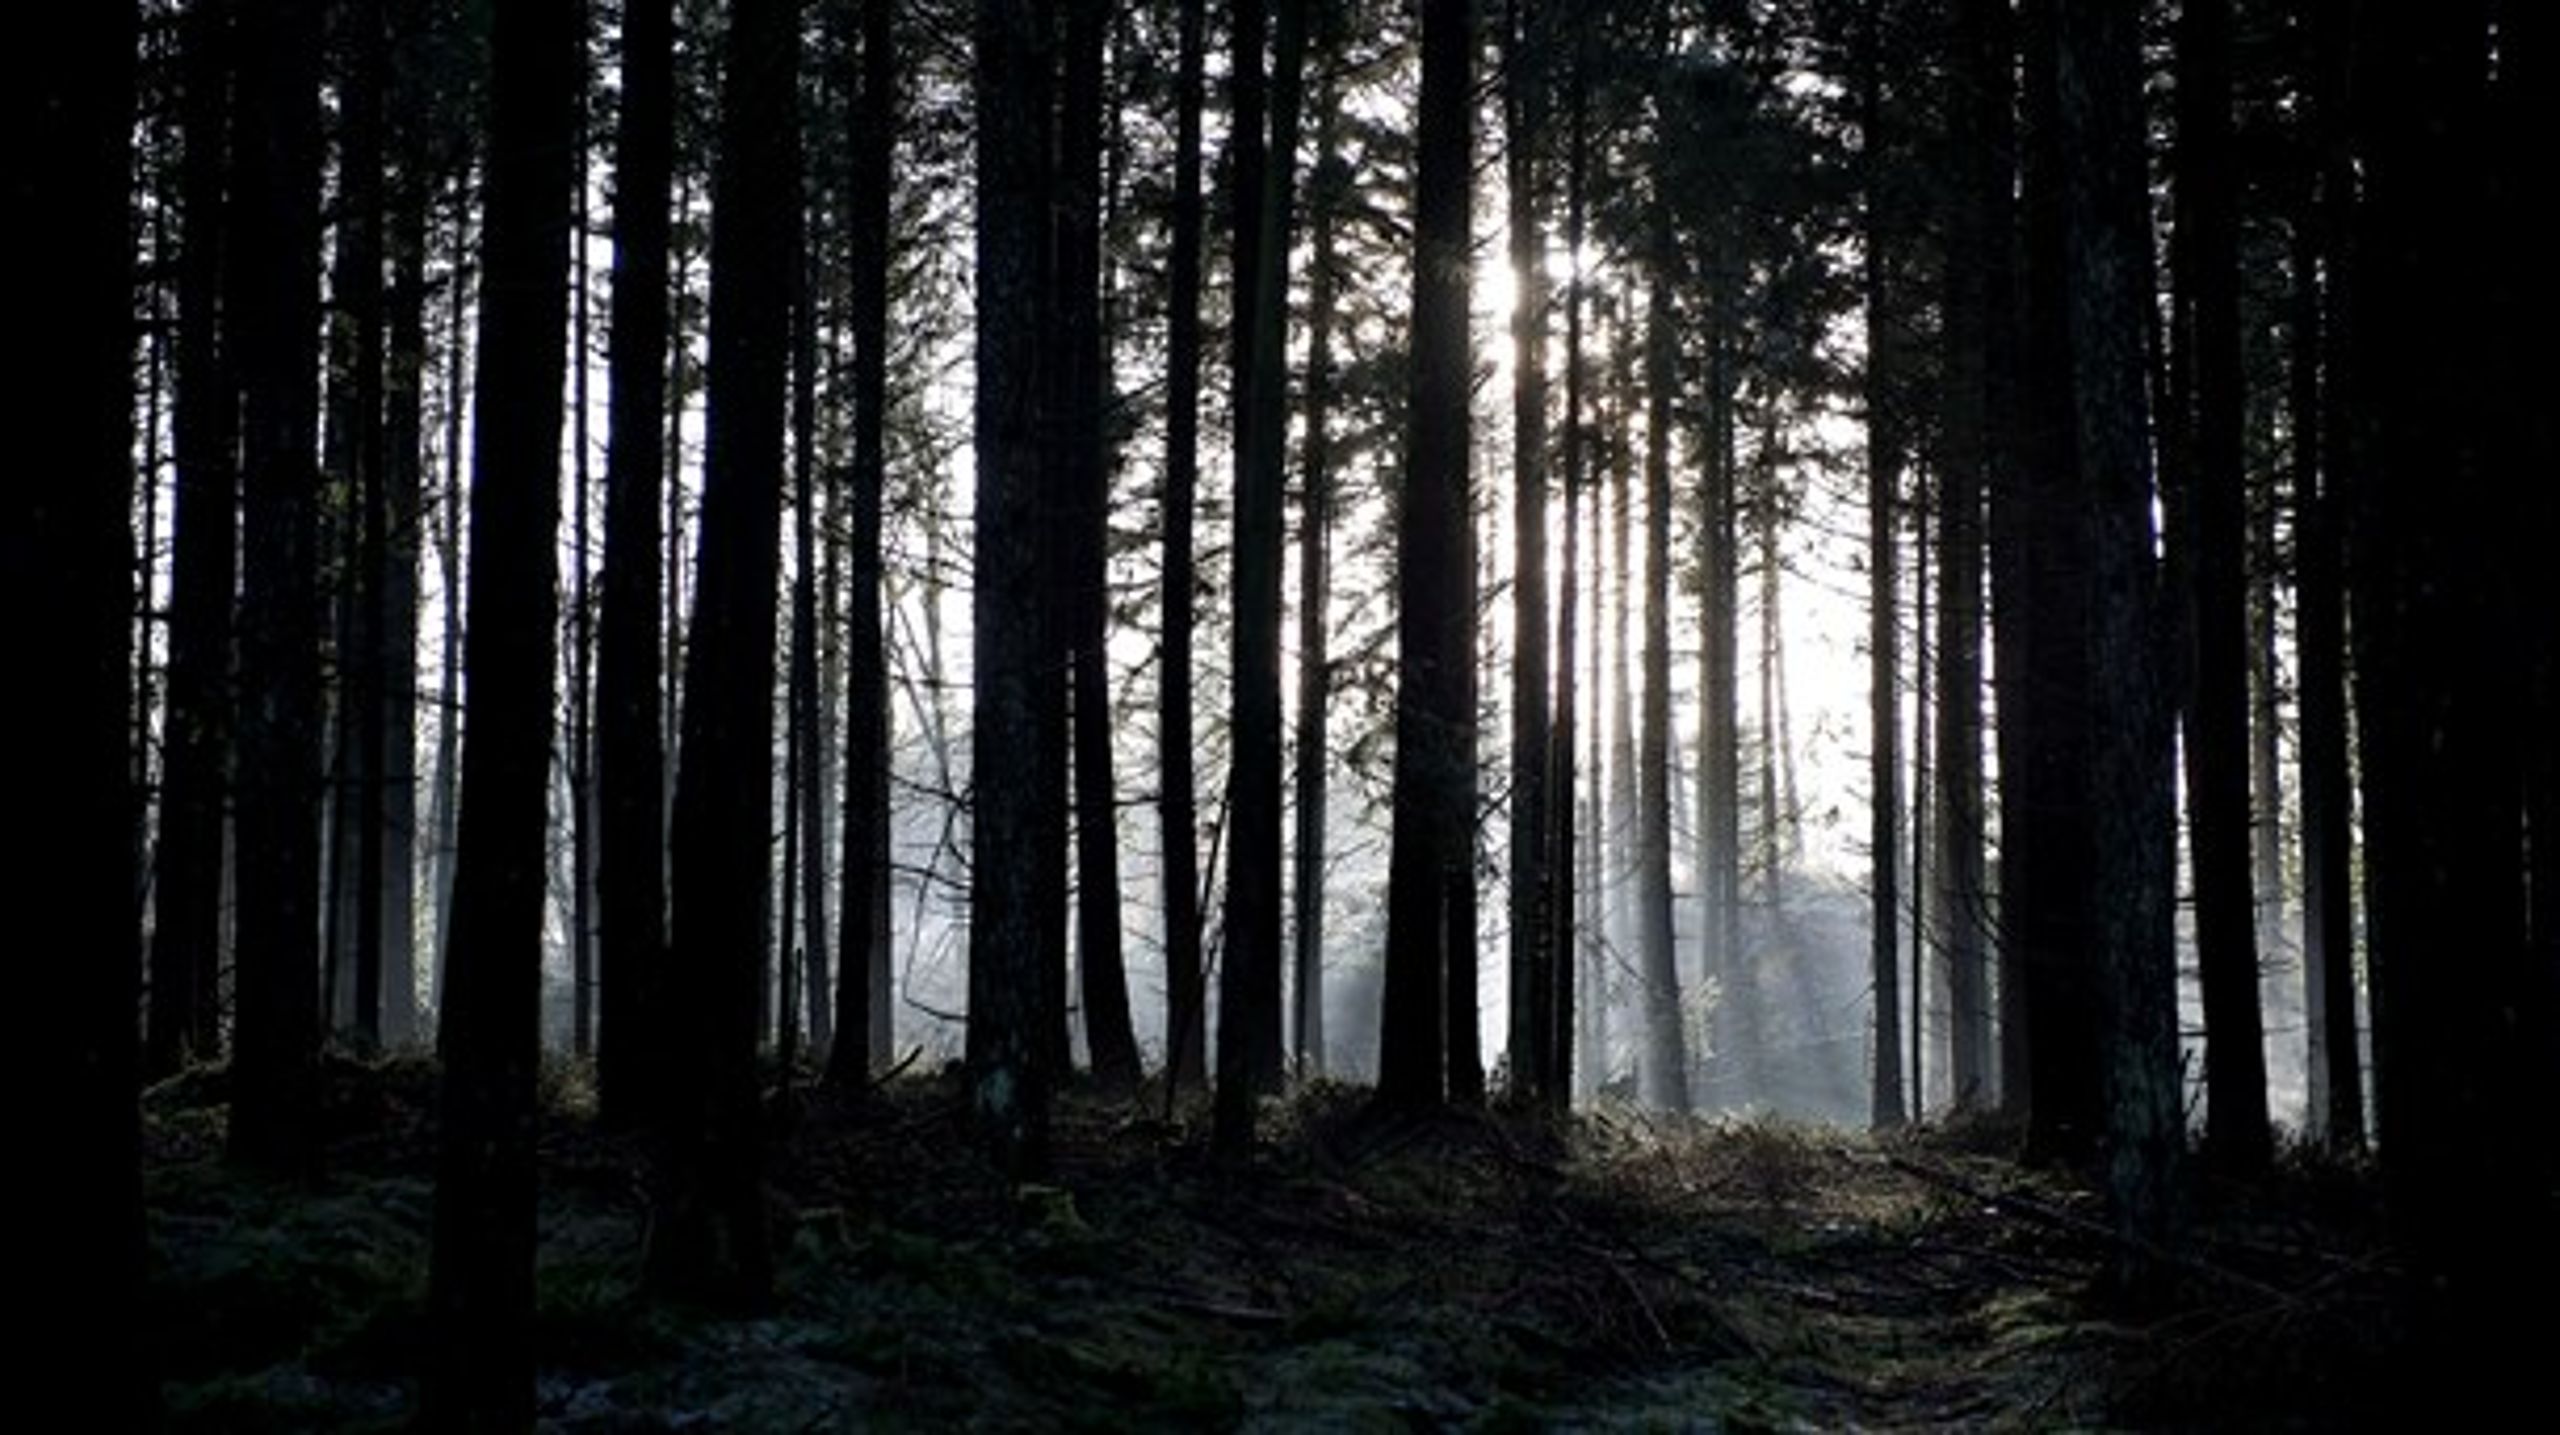 Træ er verdens mest klimavenlige råstof, skriver Karin Klitgaard fra DI.